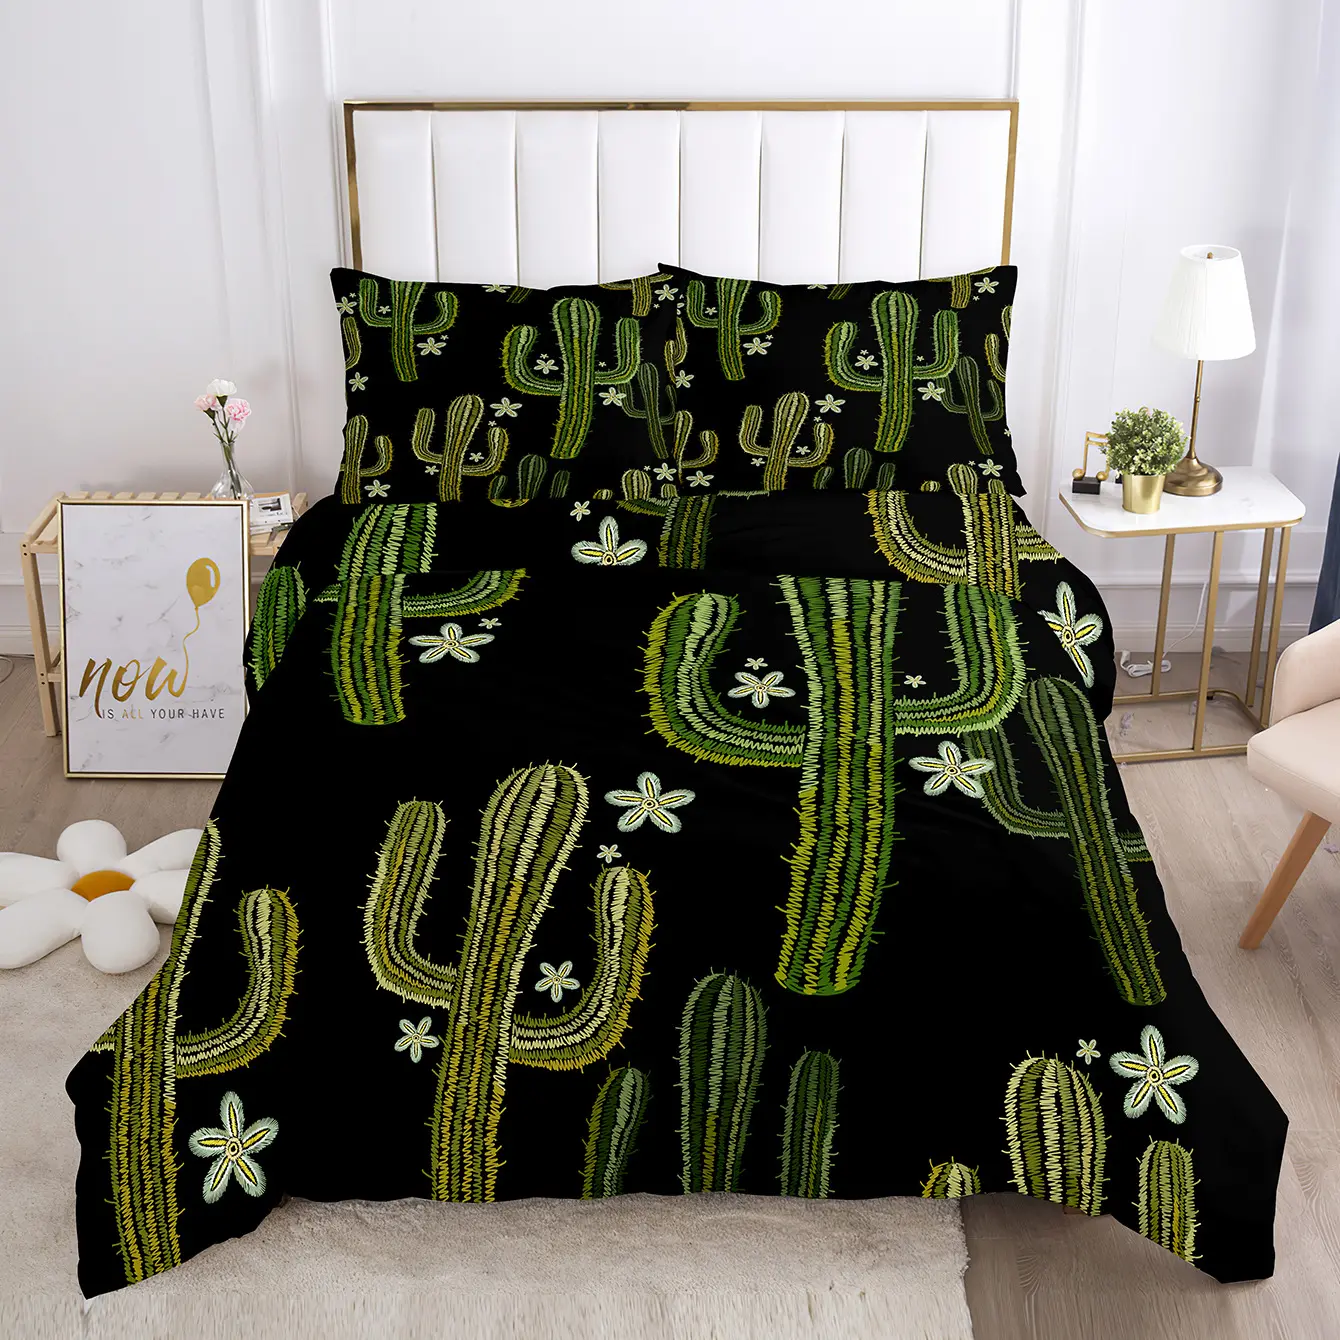 Juego de sábanas con estampado personalizado de cuatro piezas, juego de sábanas con estampado de flores y plantas, funda nórdica tamaño King, juego de cama